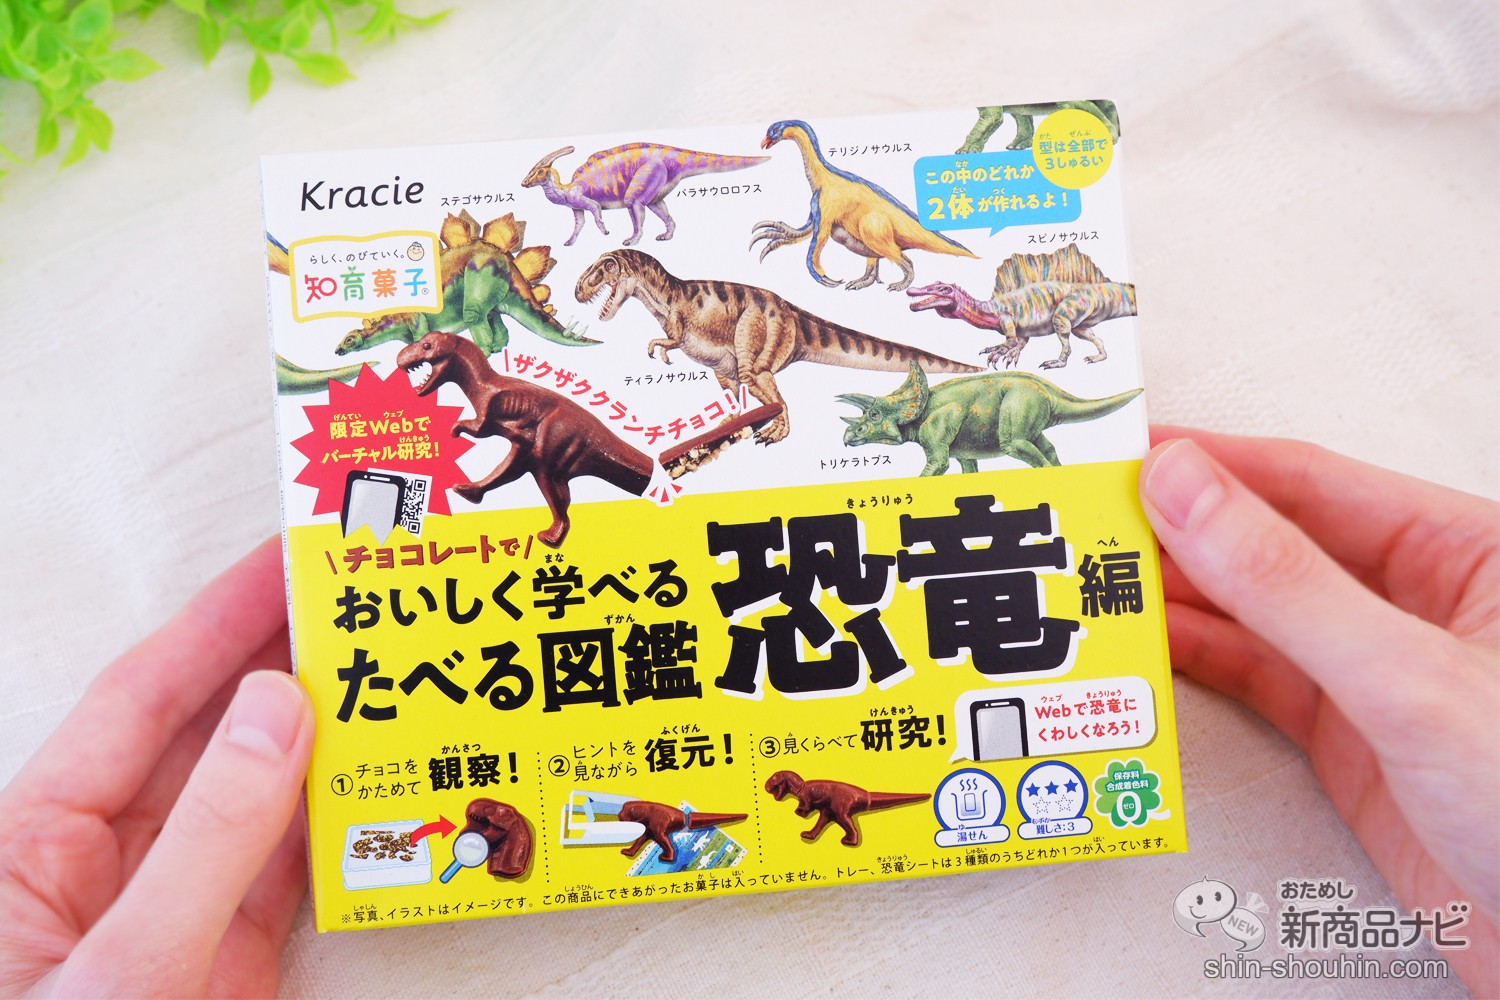 おためし新商品ナビ » Blog Archive » ホンモノそっくりな恐竜を食べて ...